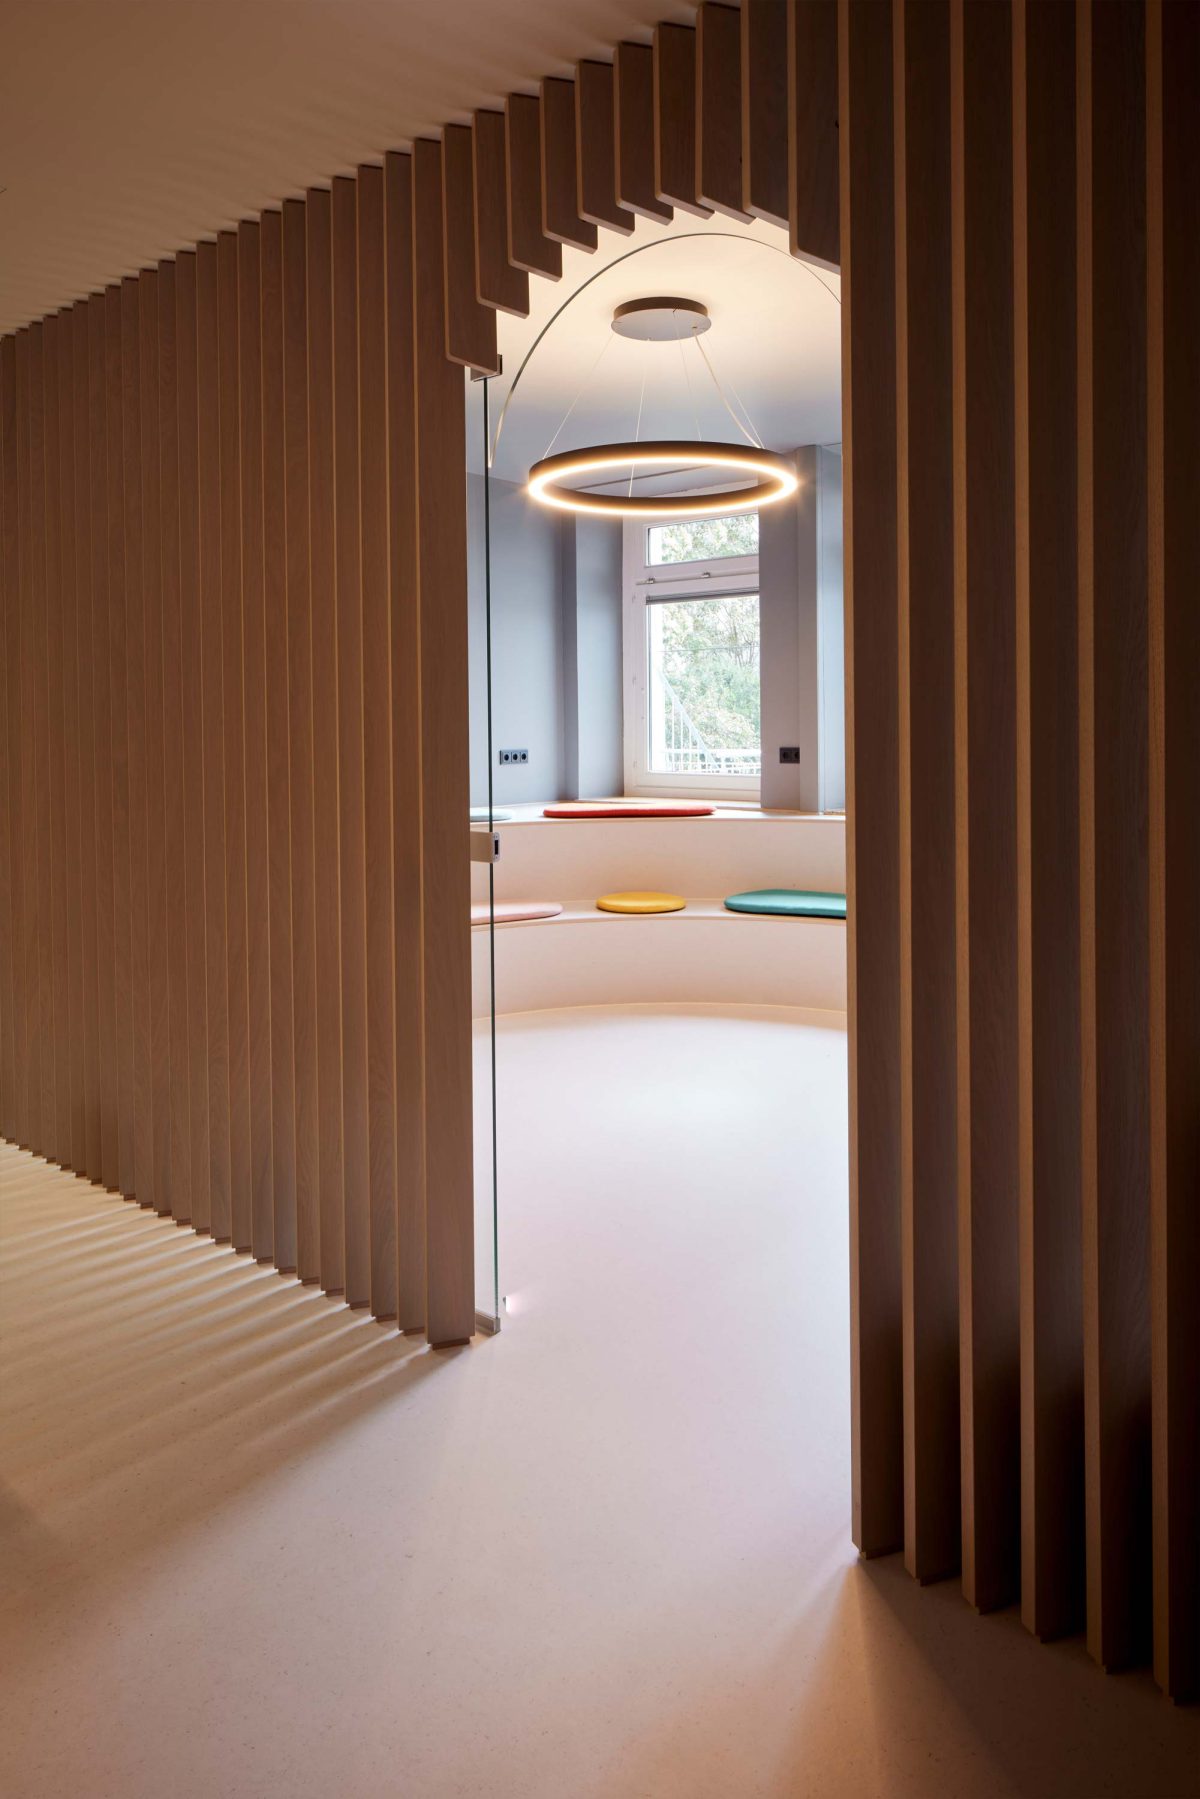 Wartezimmer in der Praxis für Kinderchirurgie. Entworfen von der Bermüller+Niemeyer Architekturwerkstatt aus Nürnberg.